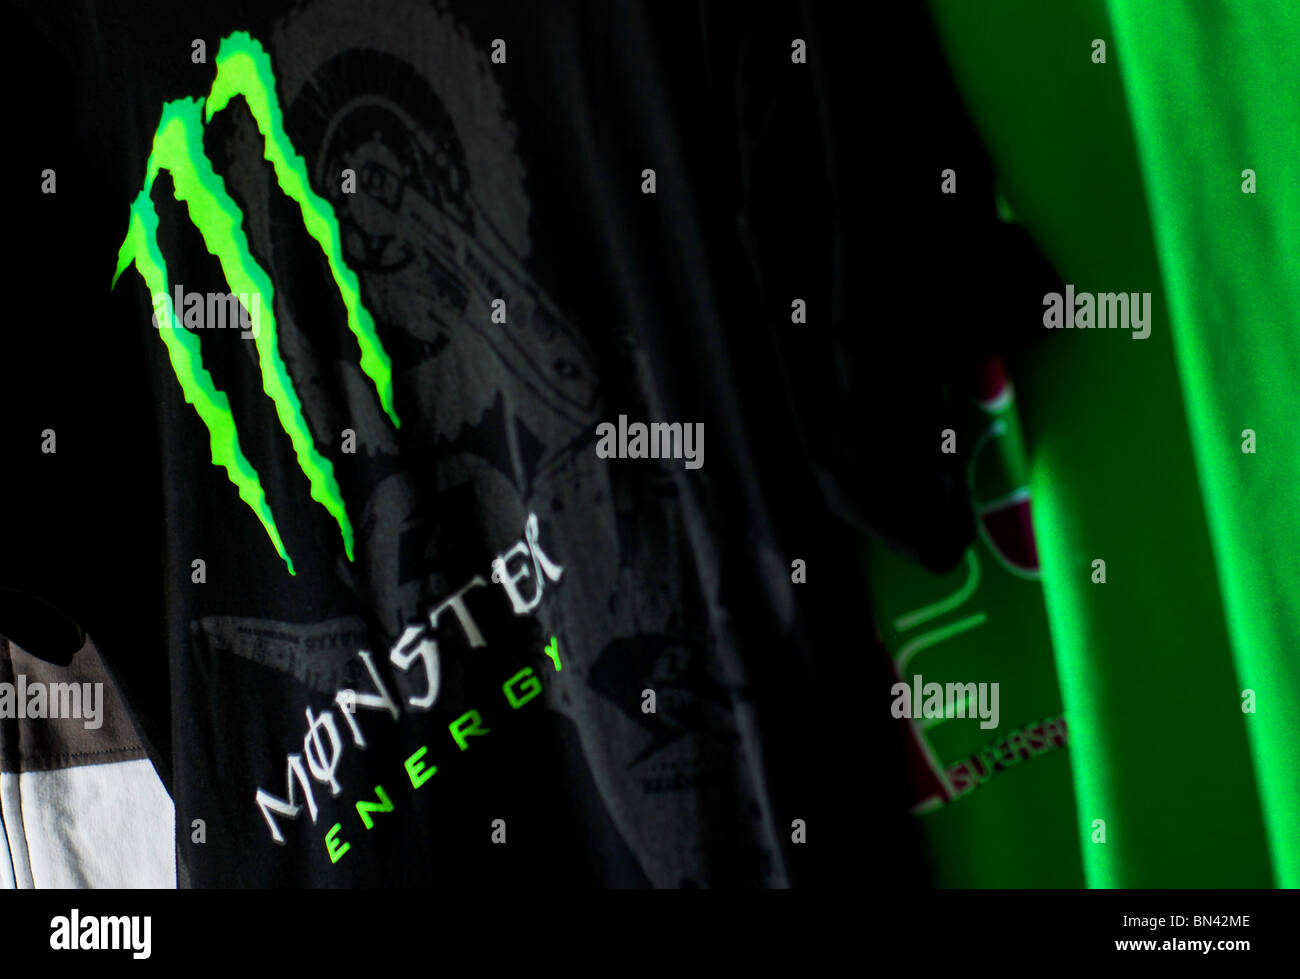 Monster energy fotografías e imágenes de alta resolución - Página 2 - Alamy